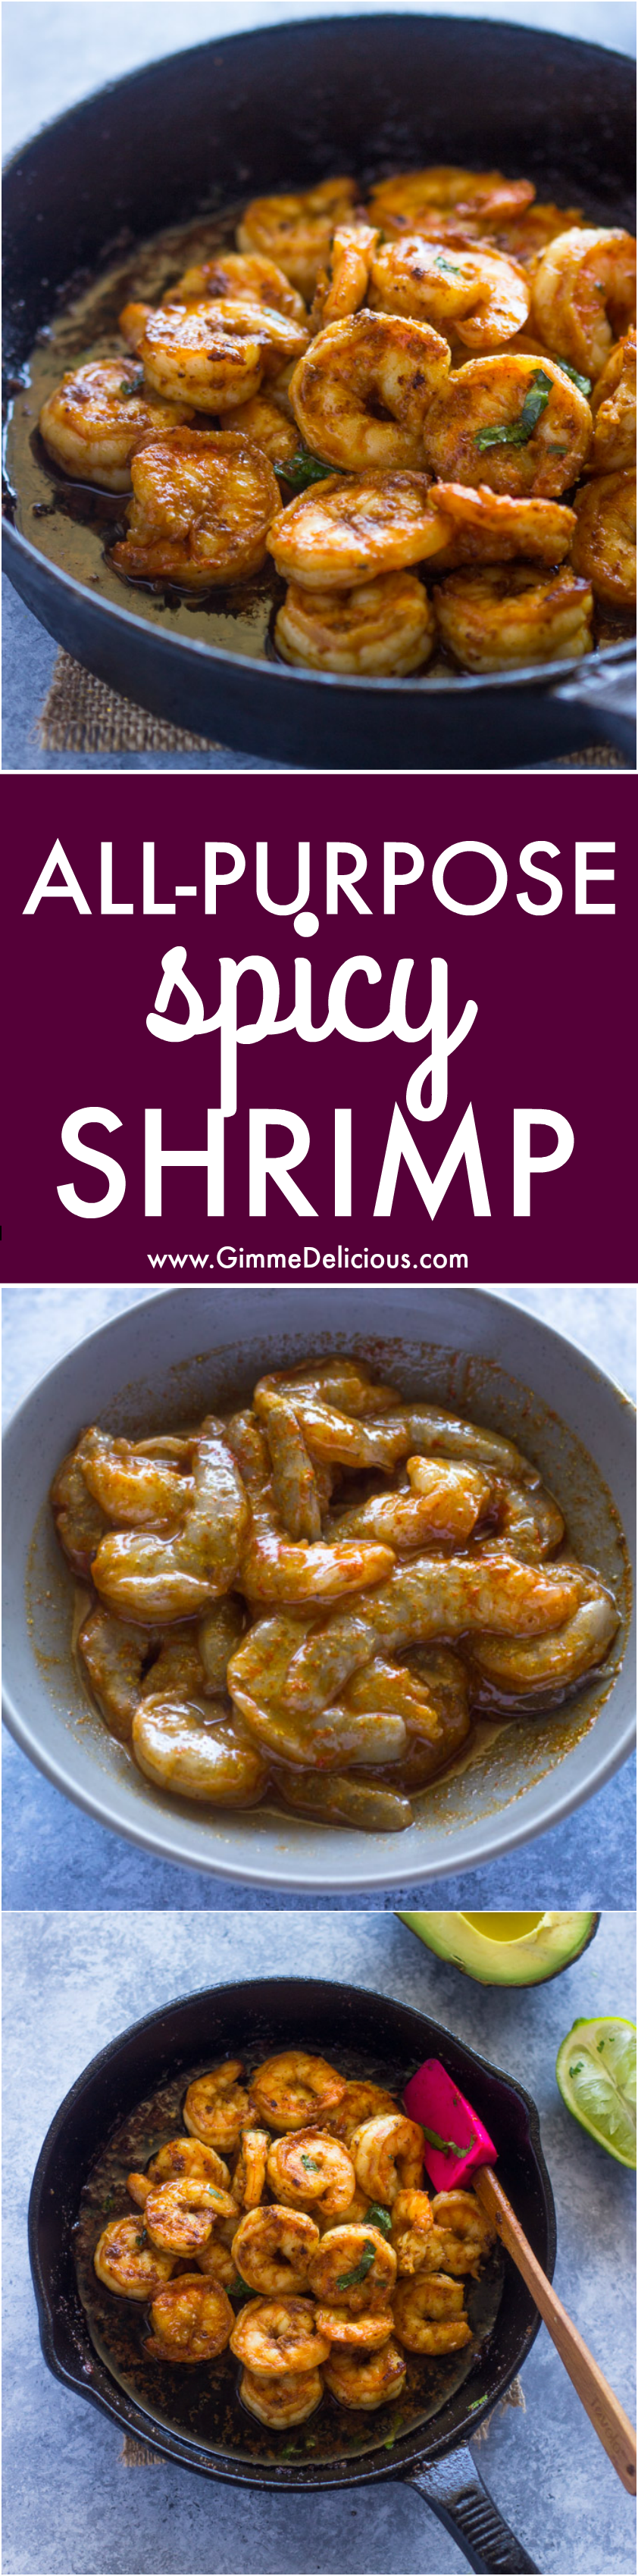 All-Purpose Spicy Shrimp